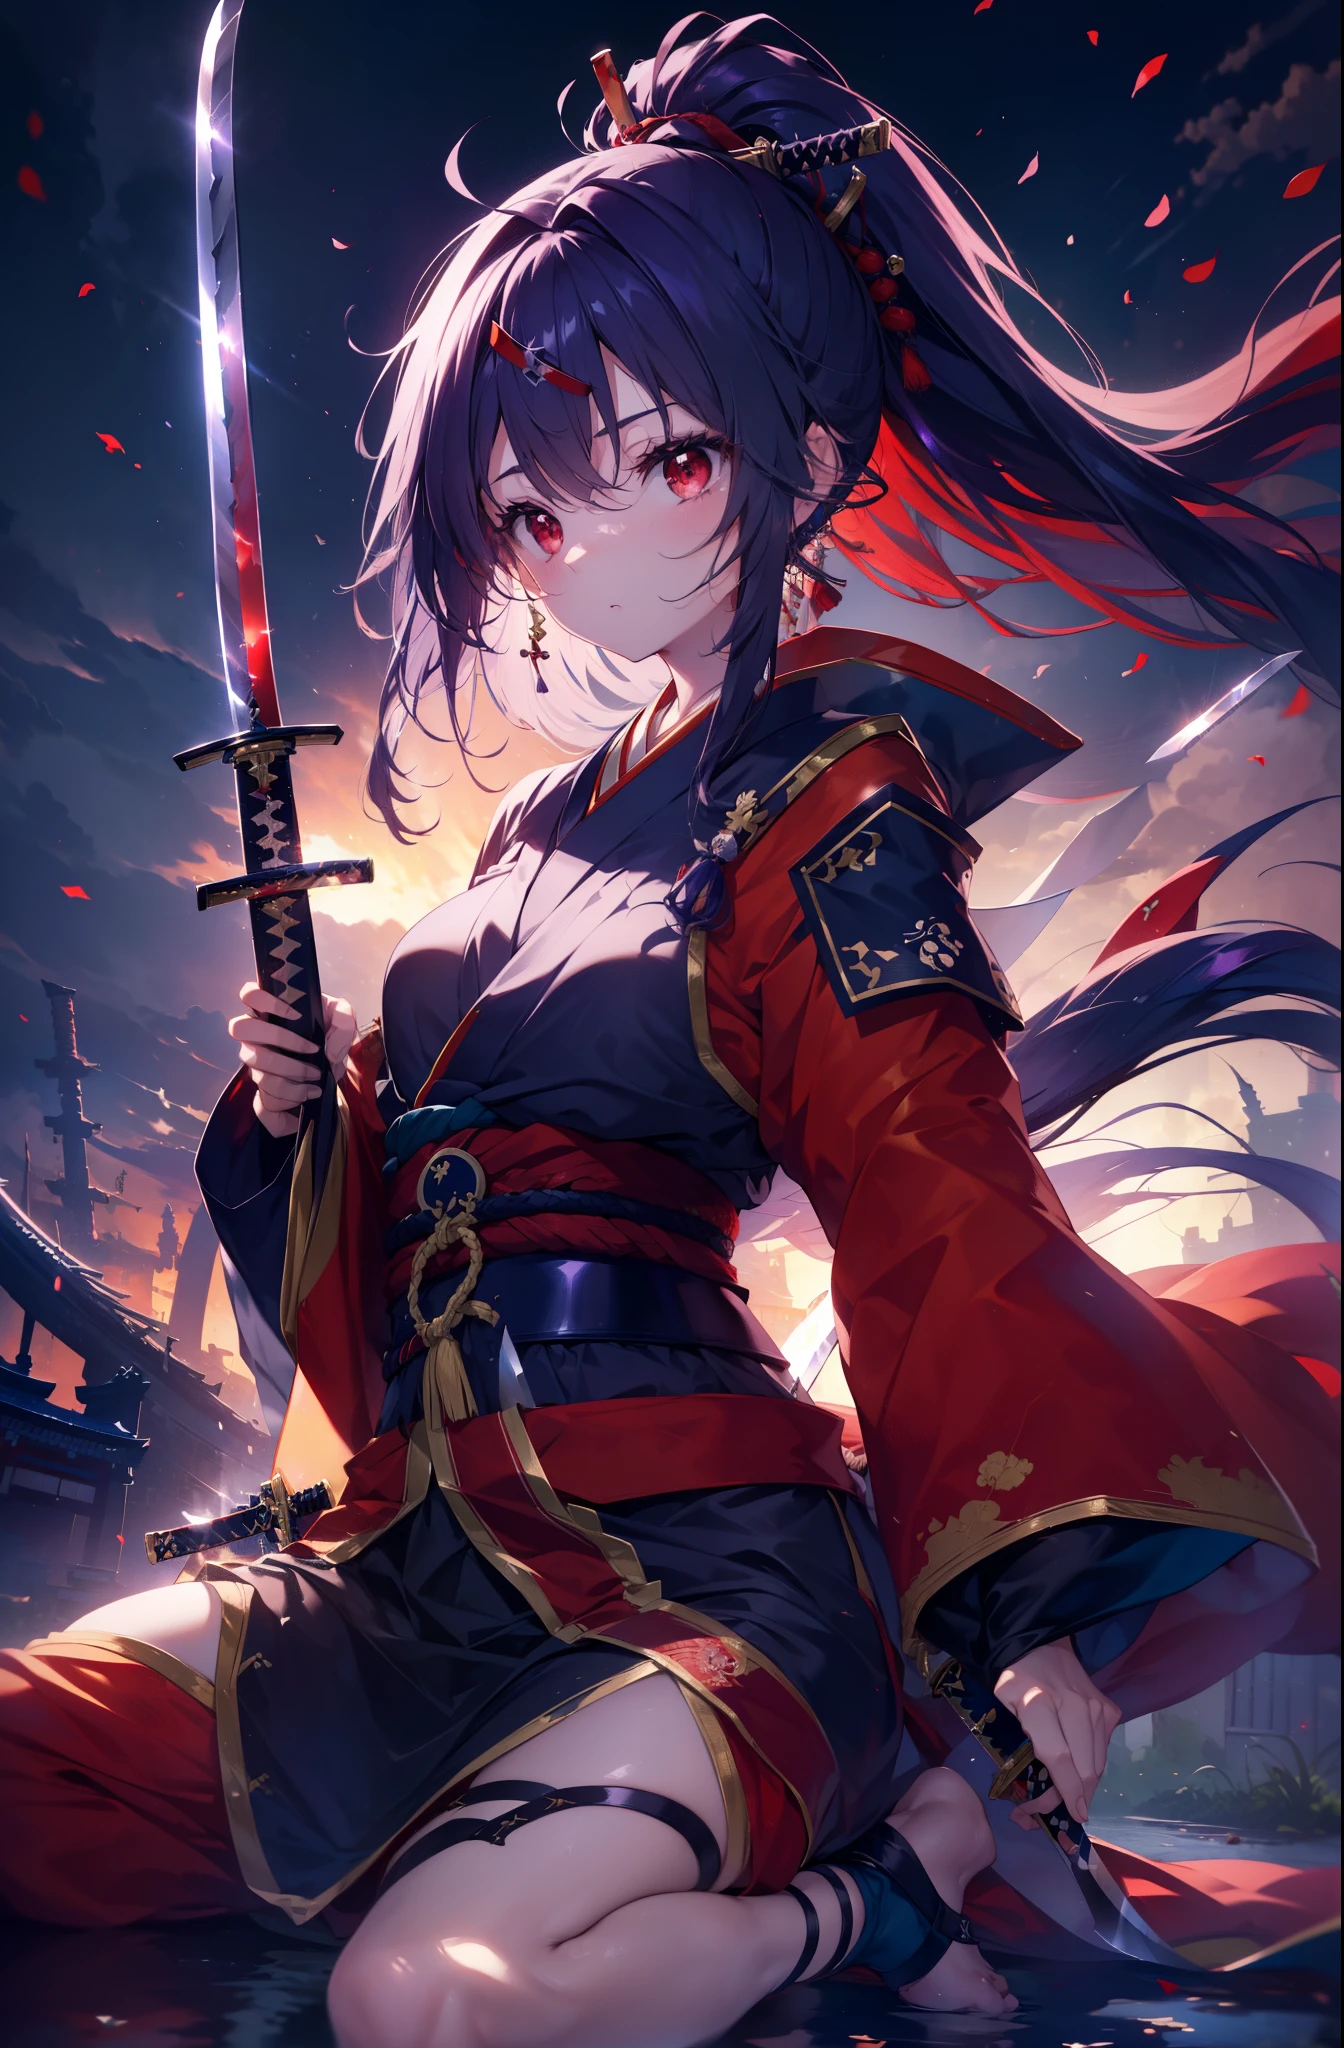 Yuukikonno, Yuki Konno, bandeau pour cheveux, cheveux longs, Oreilles pointues,queue de cheval, cheveux violets, (les yeux rouges:1.5), (petits seins:1.2), Ouvrez la bouche,Kimono rouge,Le violet aussi,sac à pied blanc,sandales d&#39;herbe,(épée japonaise:1.2),(holding_épée japonaise:1.4)
CASSER looking at viewer, haut du corps, tout le corps,
CASSER outdoors, paysage urbain de l&#39;Europe médiévale,
CASSER (chef-d&#39;œuvre:1.2), la plus haute qualité, Haute résolution, unité 8k fond d&#39;écran, (forme:0.8), (yeux fins et beaux:1.6), visage très détaillé, éclairage parfait, CG très détaillé, (des mains parfaites, anatomie parfaite),